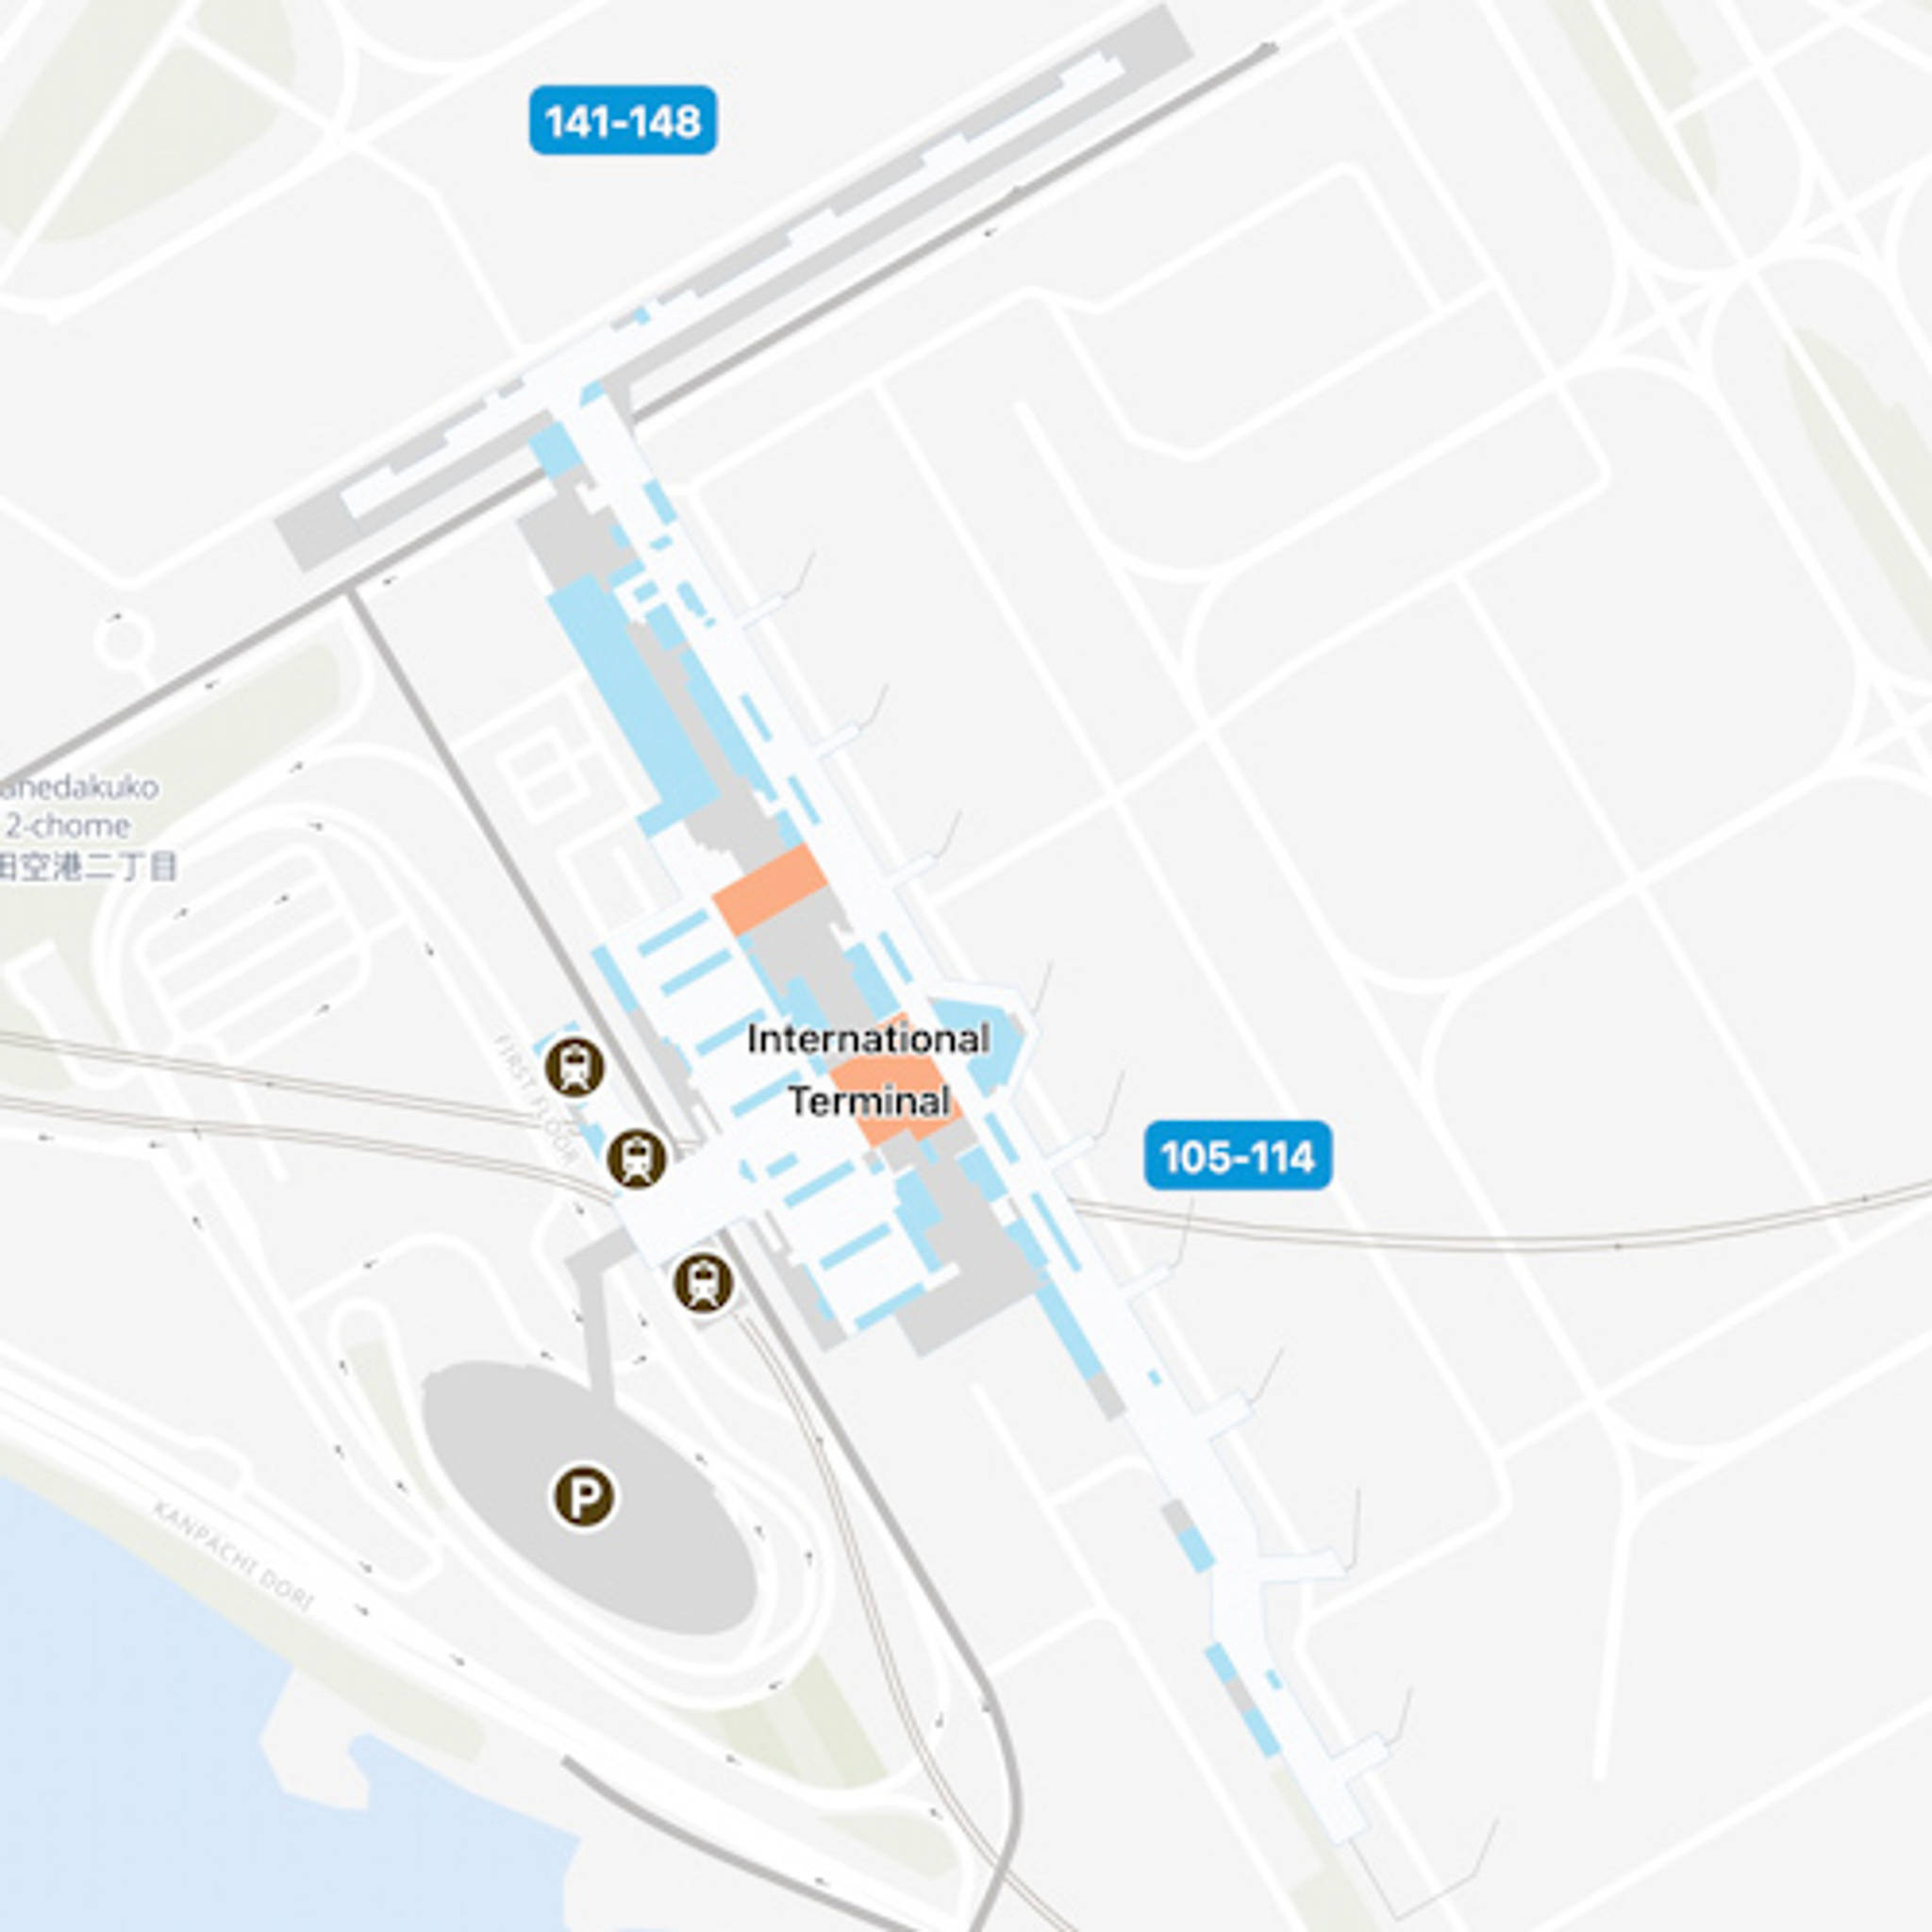 Tokyo Haneda Airport HND Intl Terminal Map